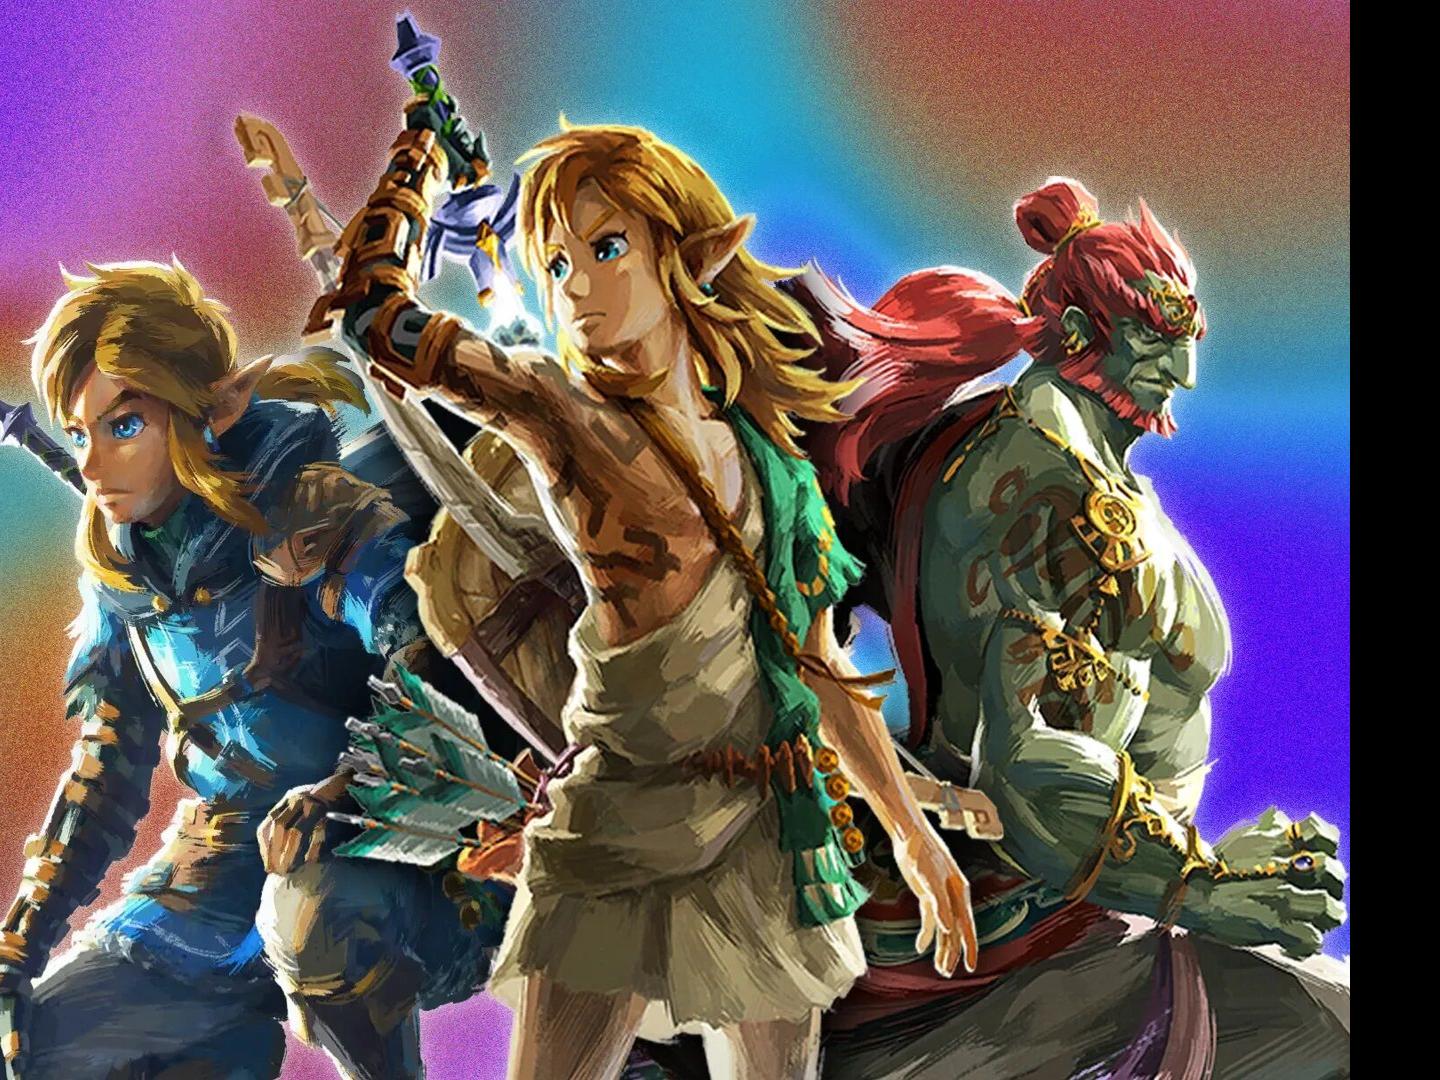 Zelda: Breath of the Wild releasing in June 2017, according to major  retailer